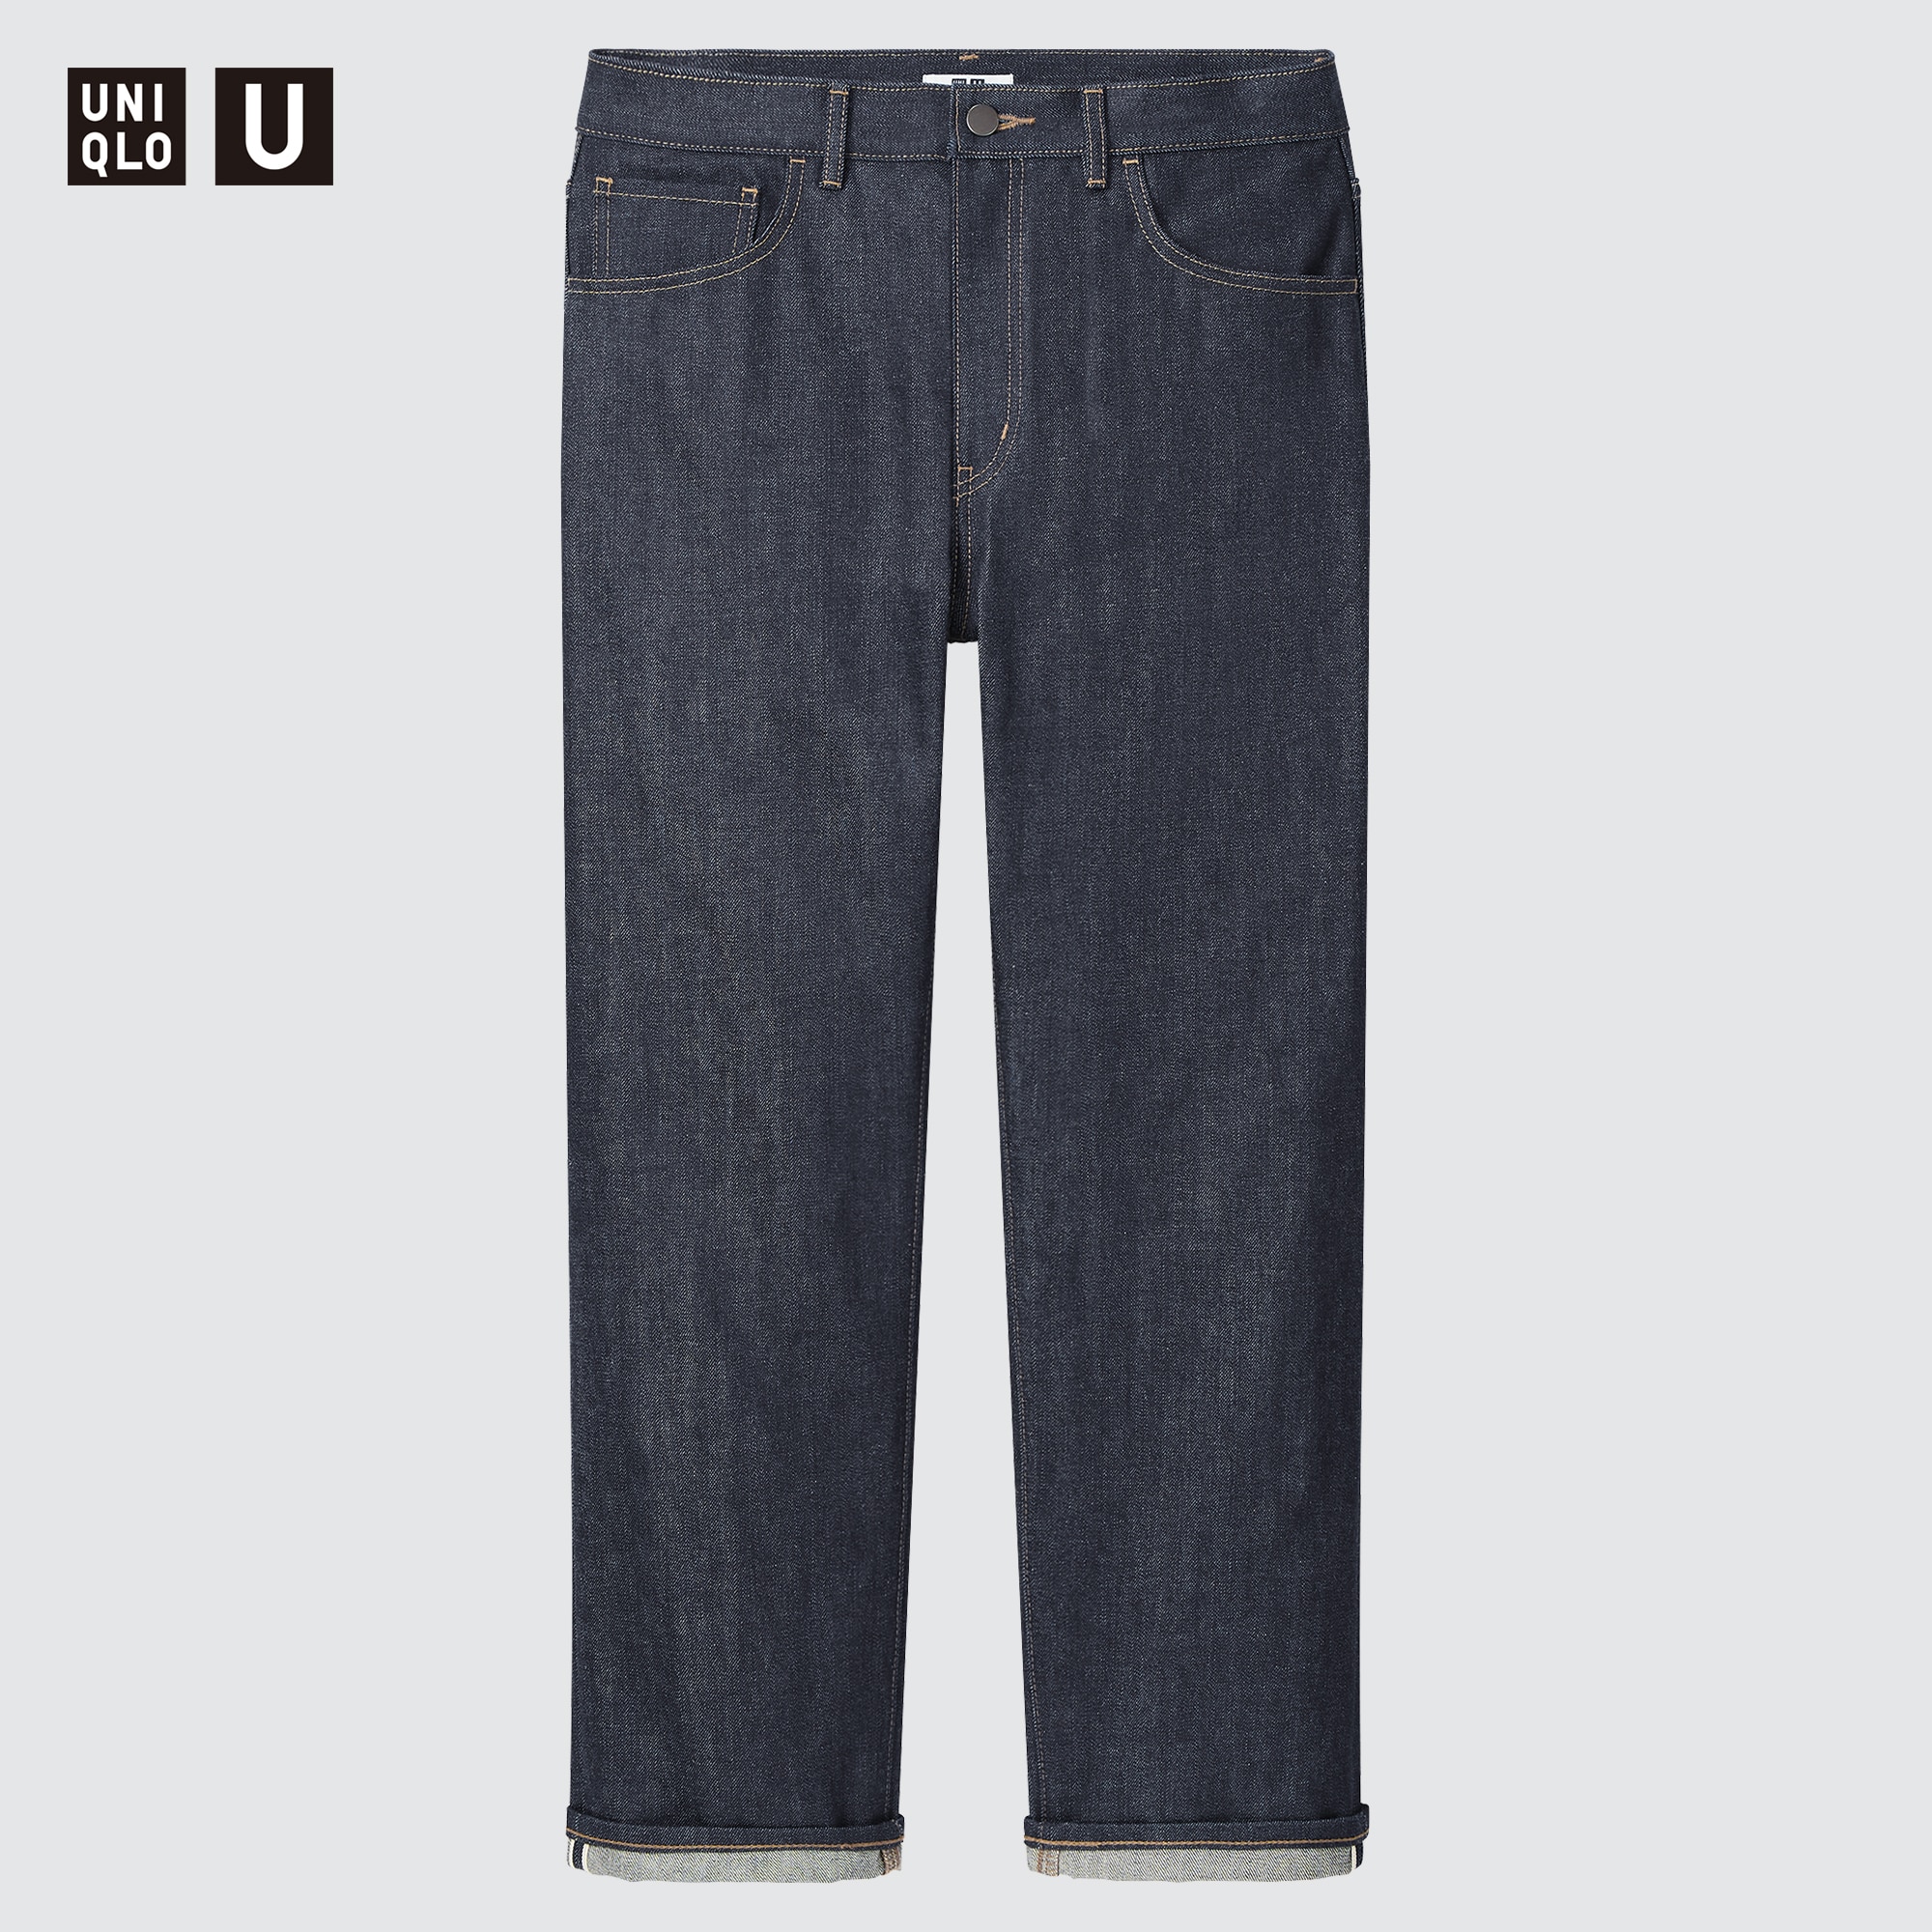 Uniqlo Vietnam  Thử so sánh 2 chiếc quần jeans xắn gấu Stretch Selvedge  của UNIQLO được ra mắt cách nhau vài năm và kết quả Sau gần 2  3 năm